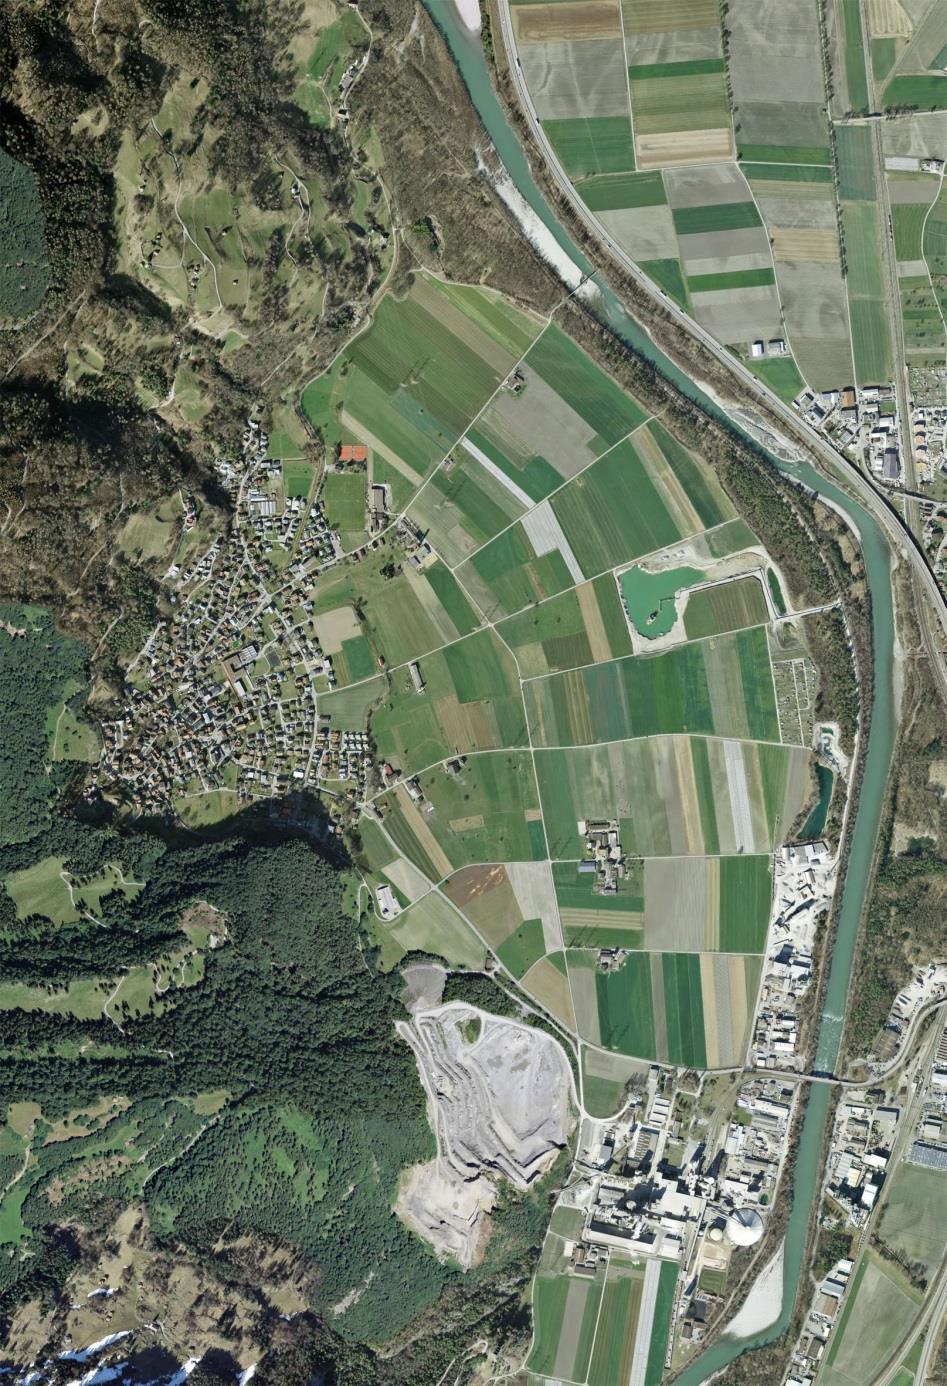 U n t e r v a z D a s D o r f Untervaz liegt im Churer Rheintal am Fusse des Calanda und zählt ca. 2'500 Einwohner. Die Gemeinde ist verkehrstechnisch gut erschlossen.